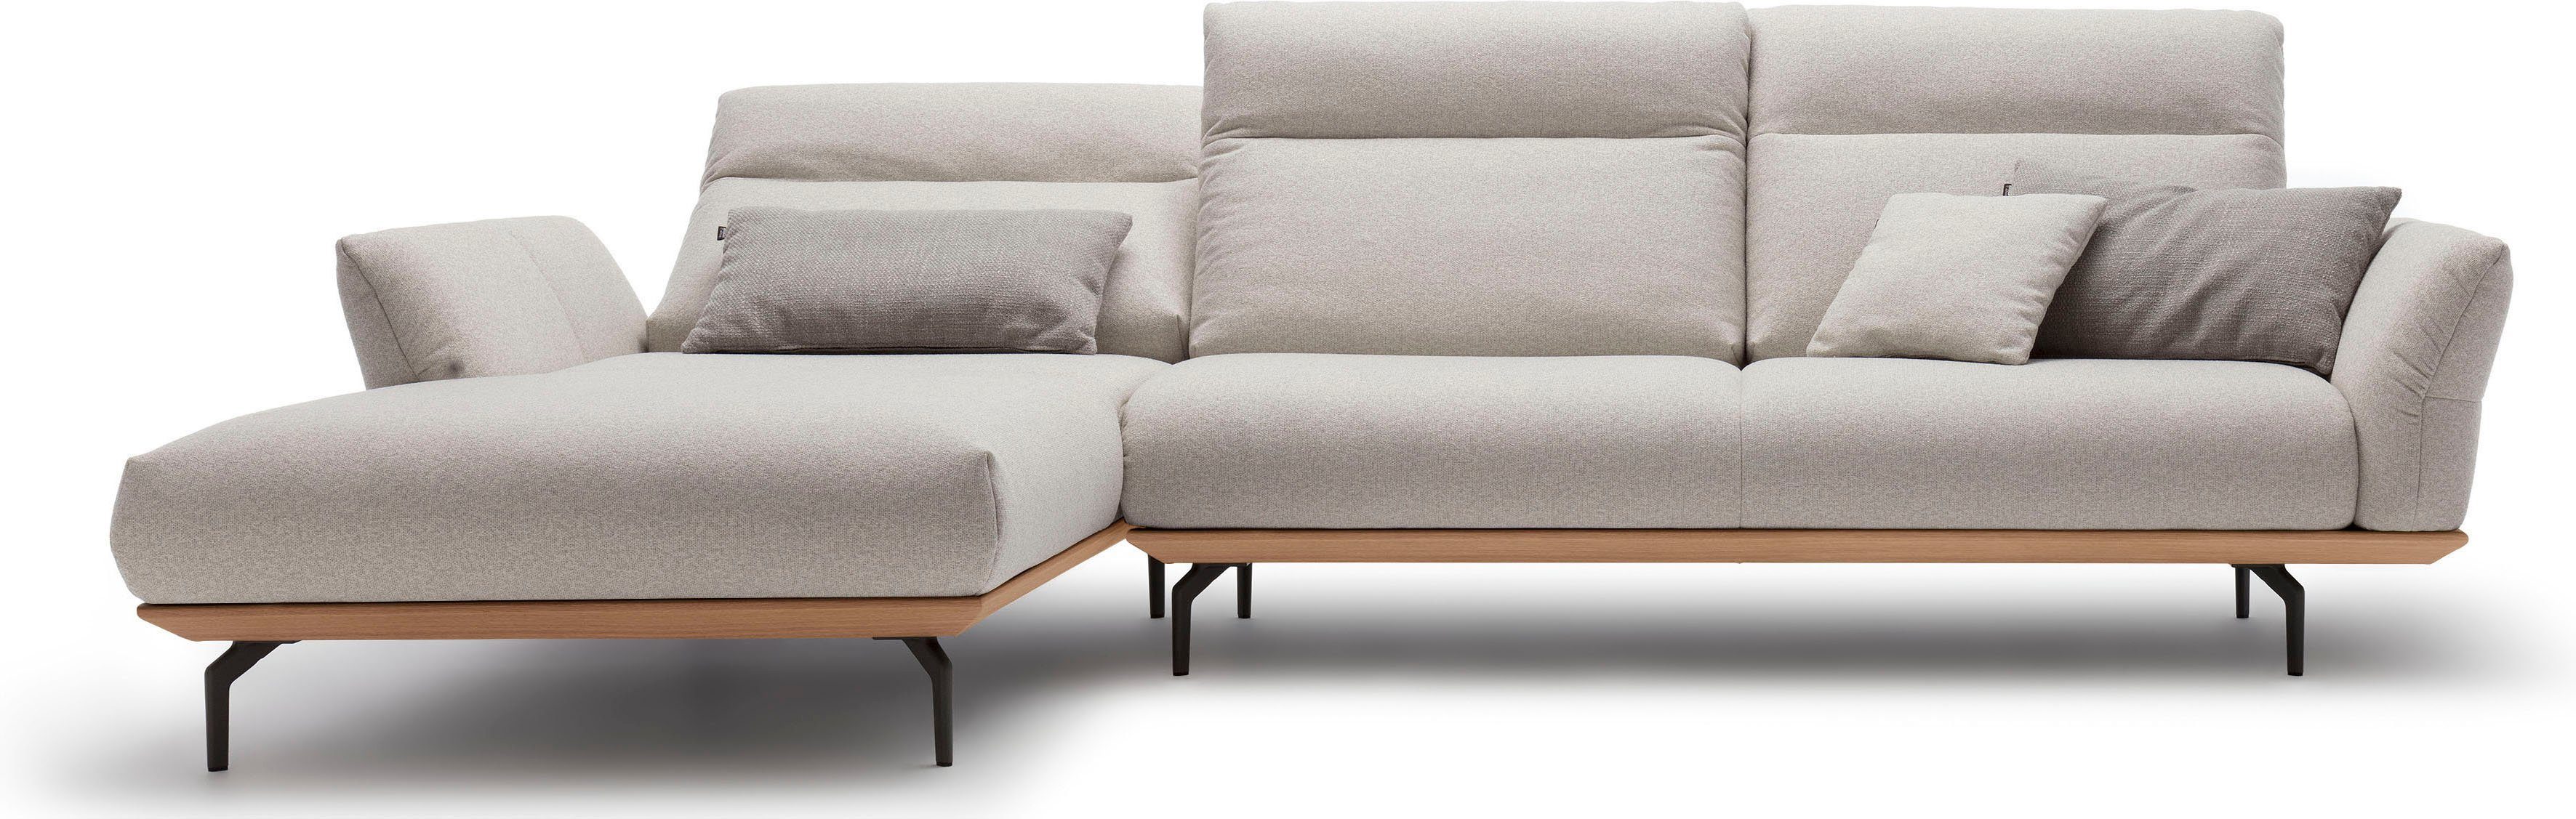 huelsta sofa hoekbank hs.460 sokkel in eiken, onderstel in umbra grijs, breedte 318 cm grijs